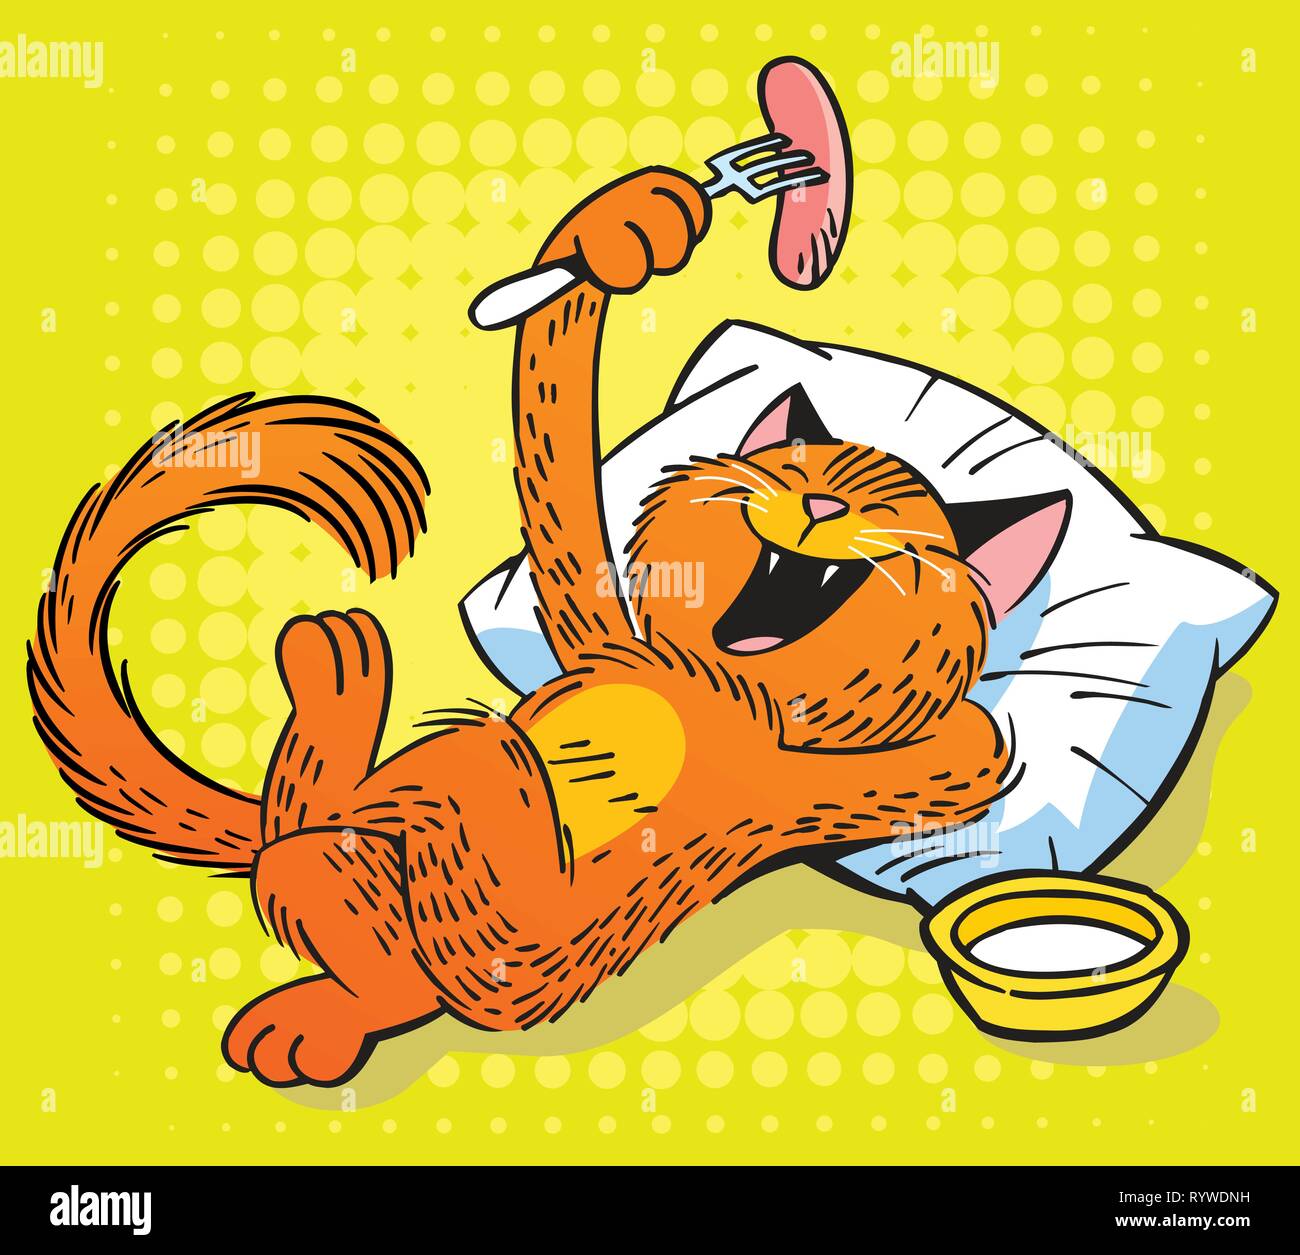 Dans l'illustration vectorielle, un drôle de chat rouge mange une saucisse à partir d'une fourchette. Illustration dans le style cartoon. Illustration de Vecteur